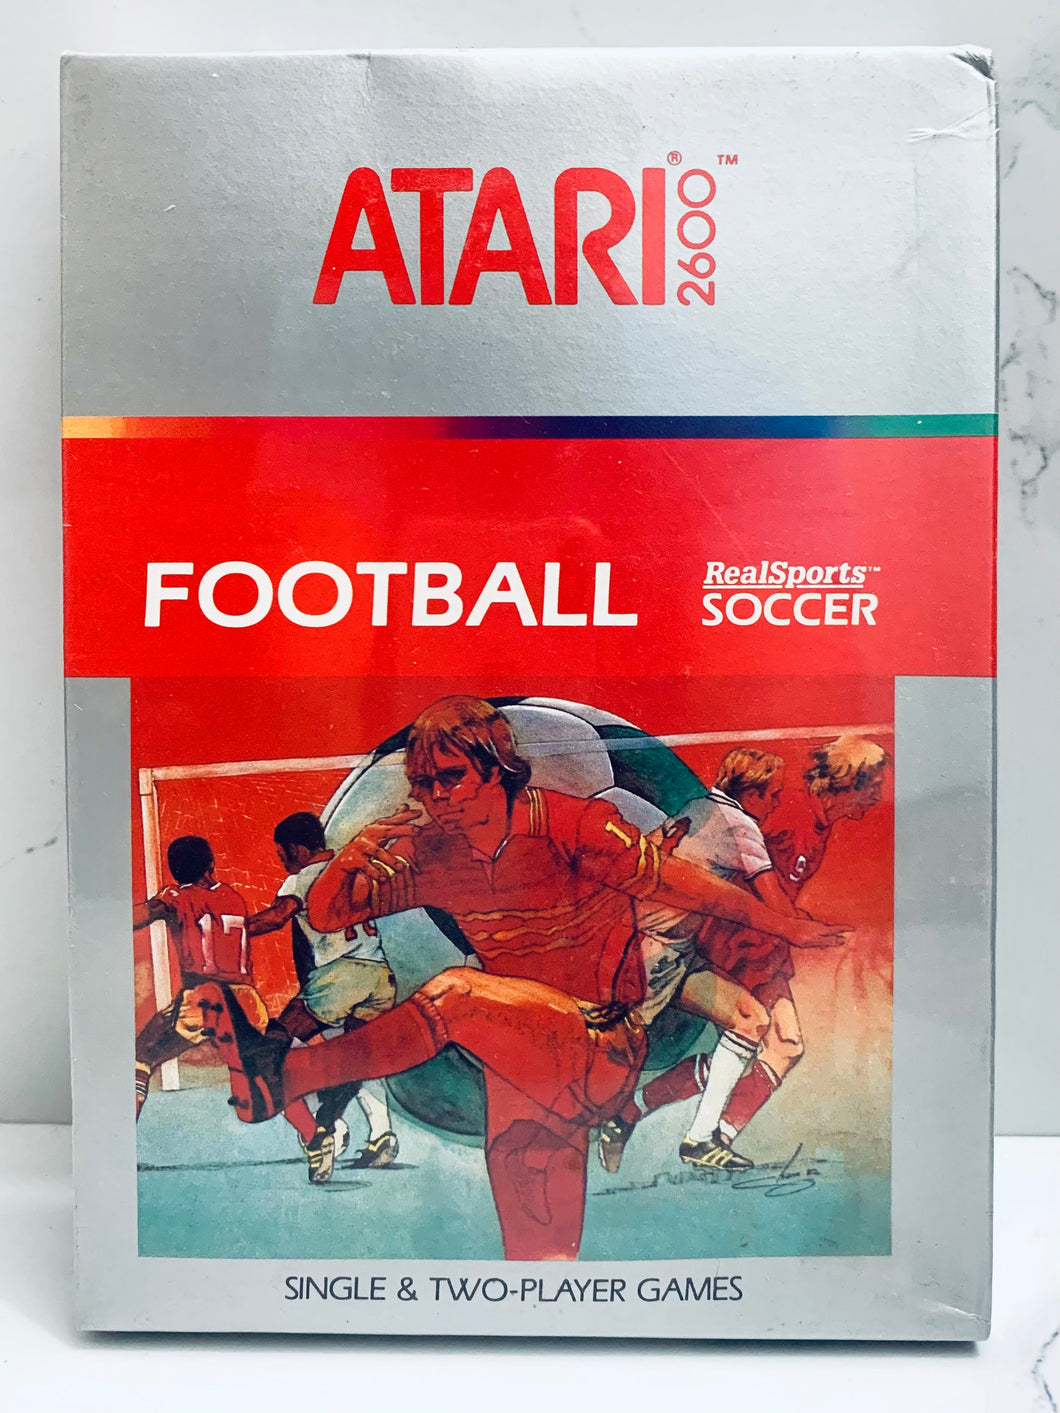 RealSports Soccer - Atari VCS 2600 - NTSC - Brand New